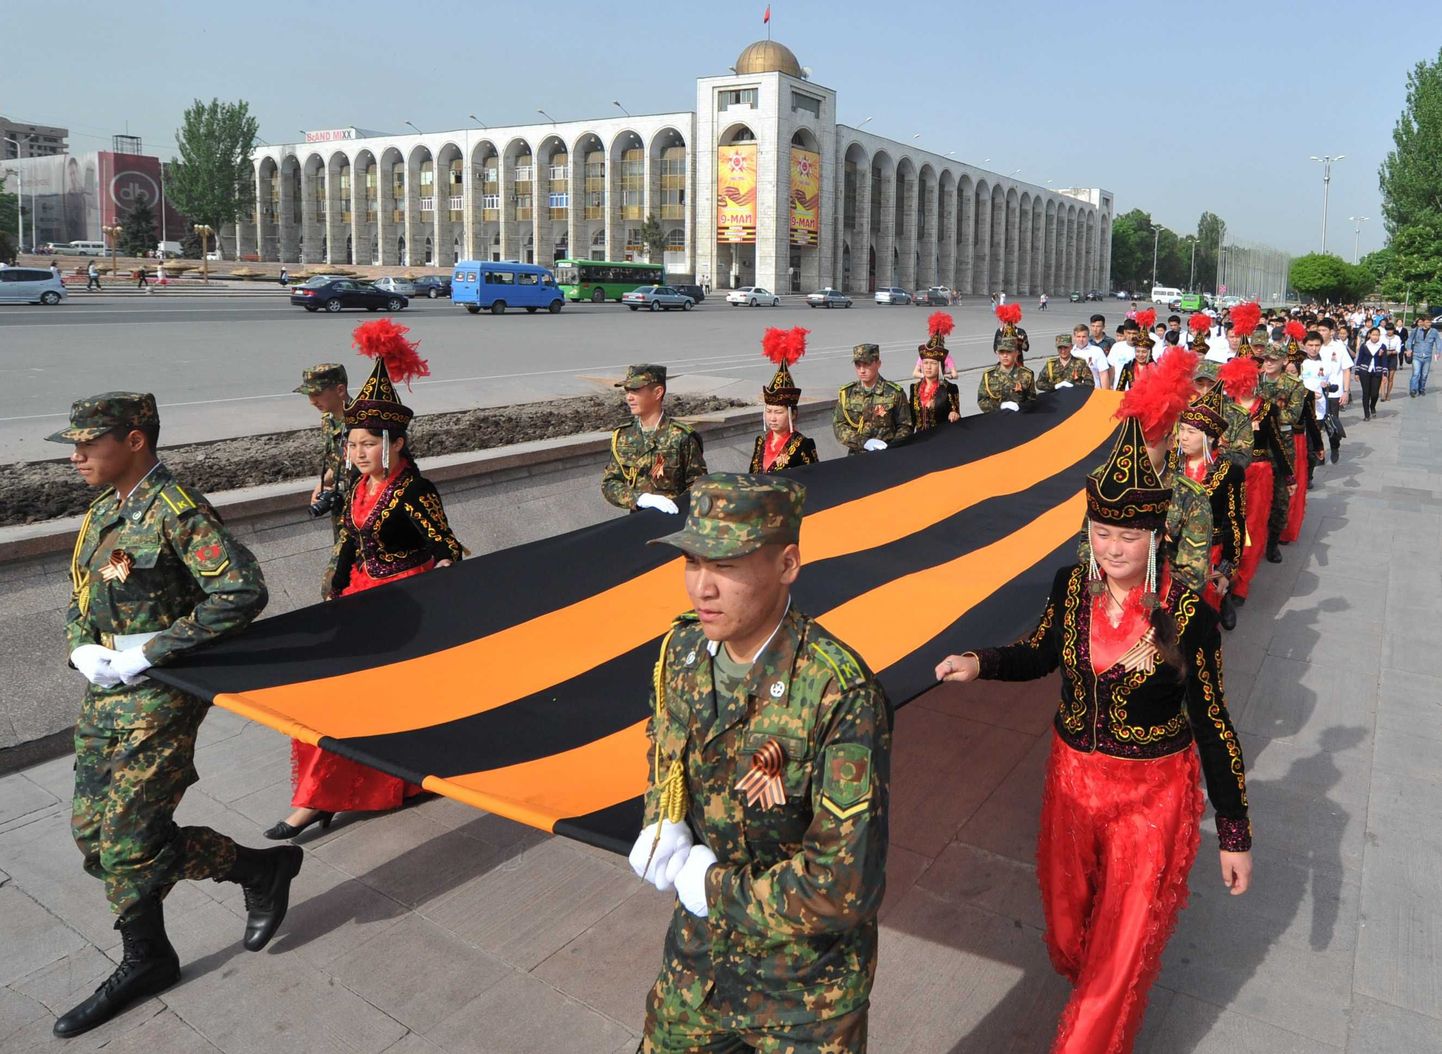 Rahvariides kirgiisitarid ja sõjaväelased 7. mail suure Georgi lindiga paraadil.